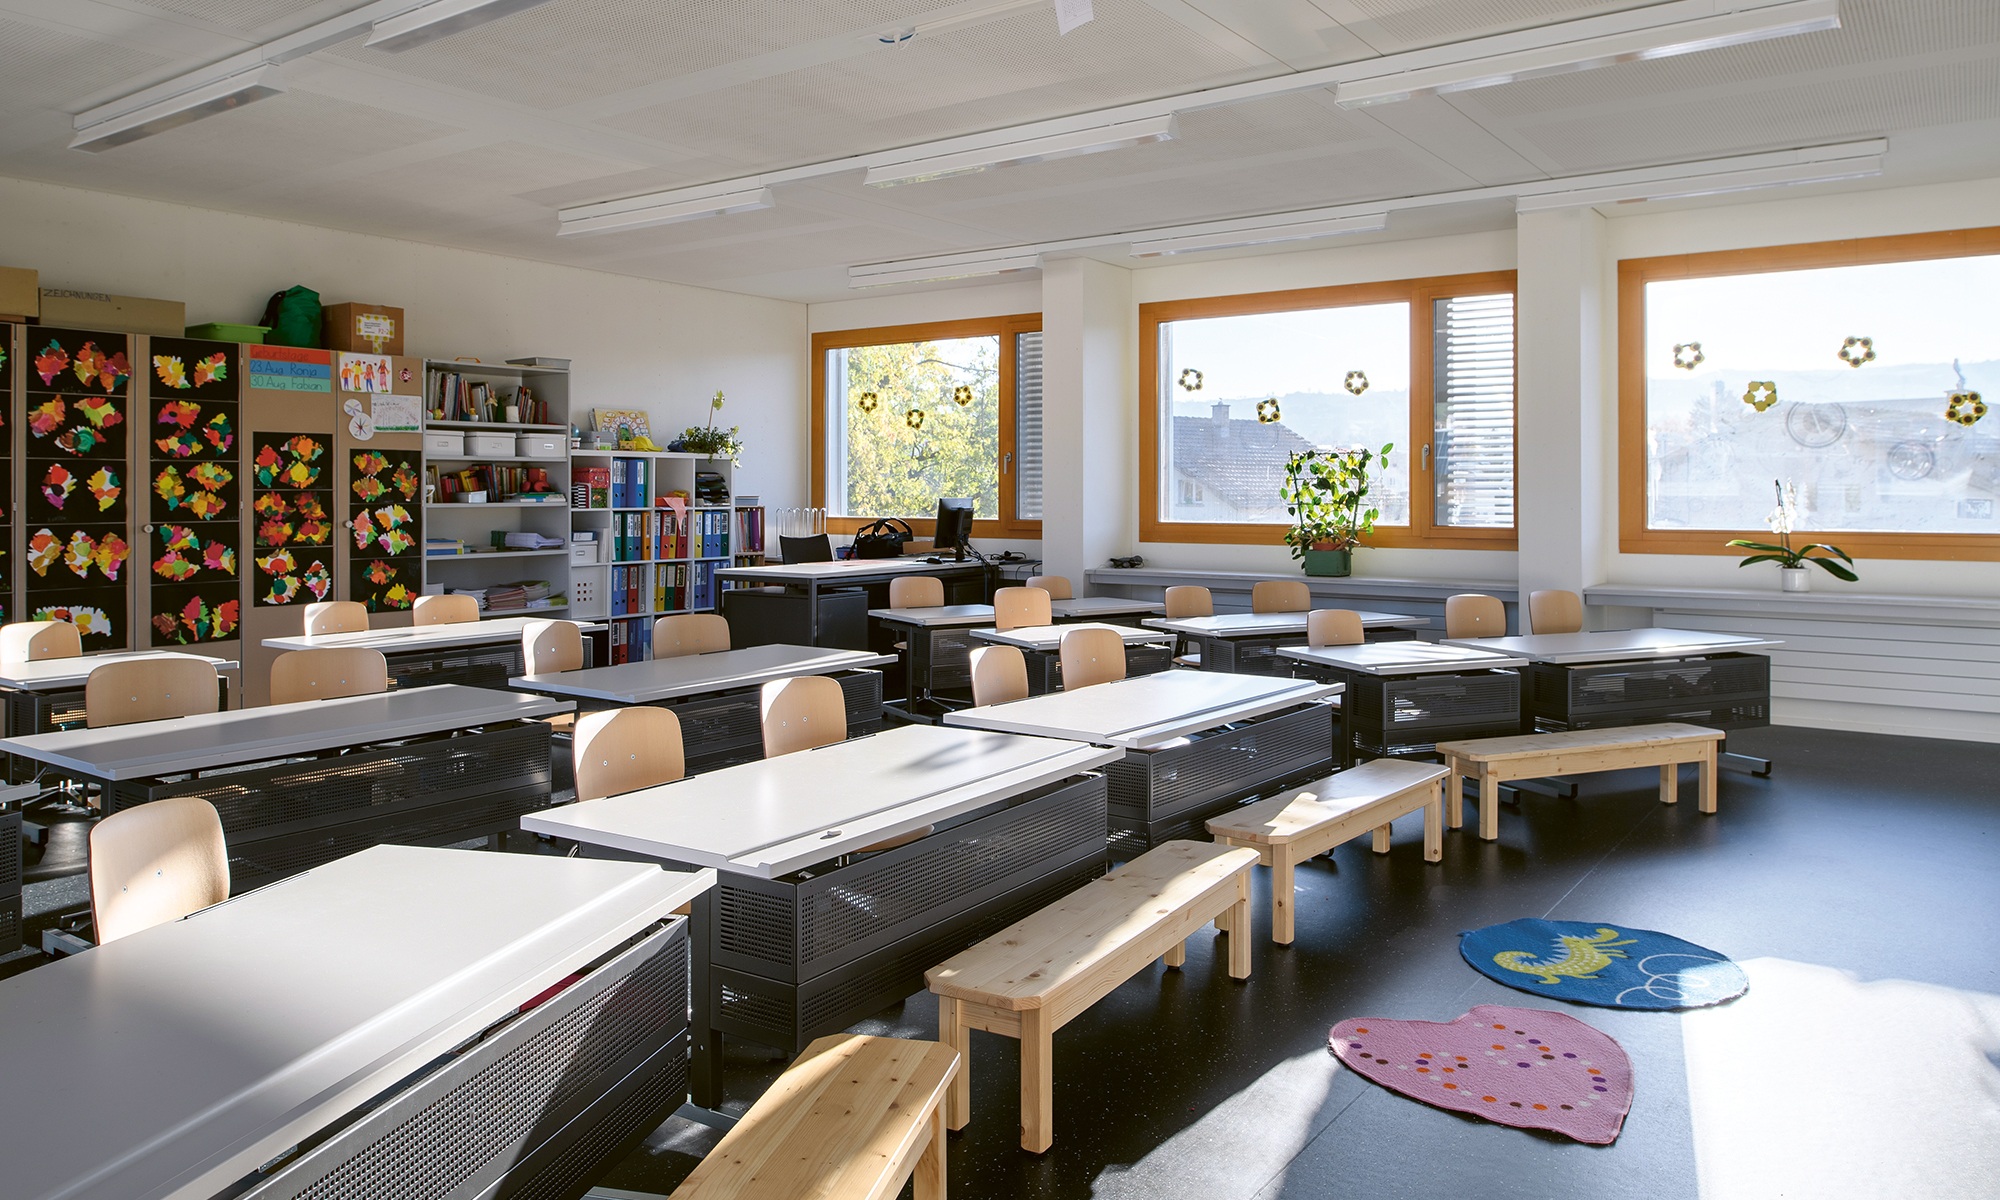 Les salles de classe inondées de lumière favorisent l’apprentissage dans le module en bois